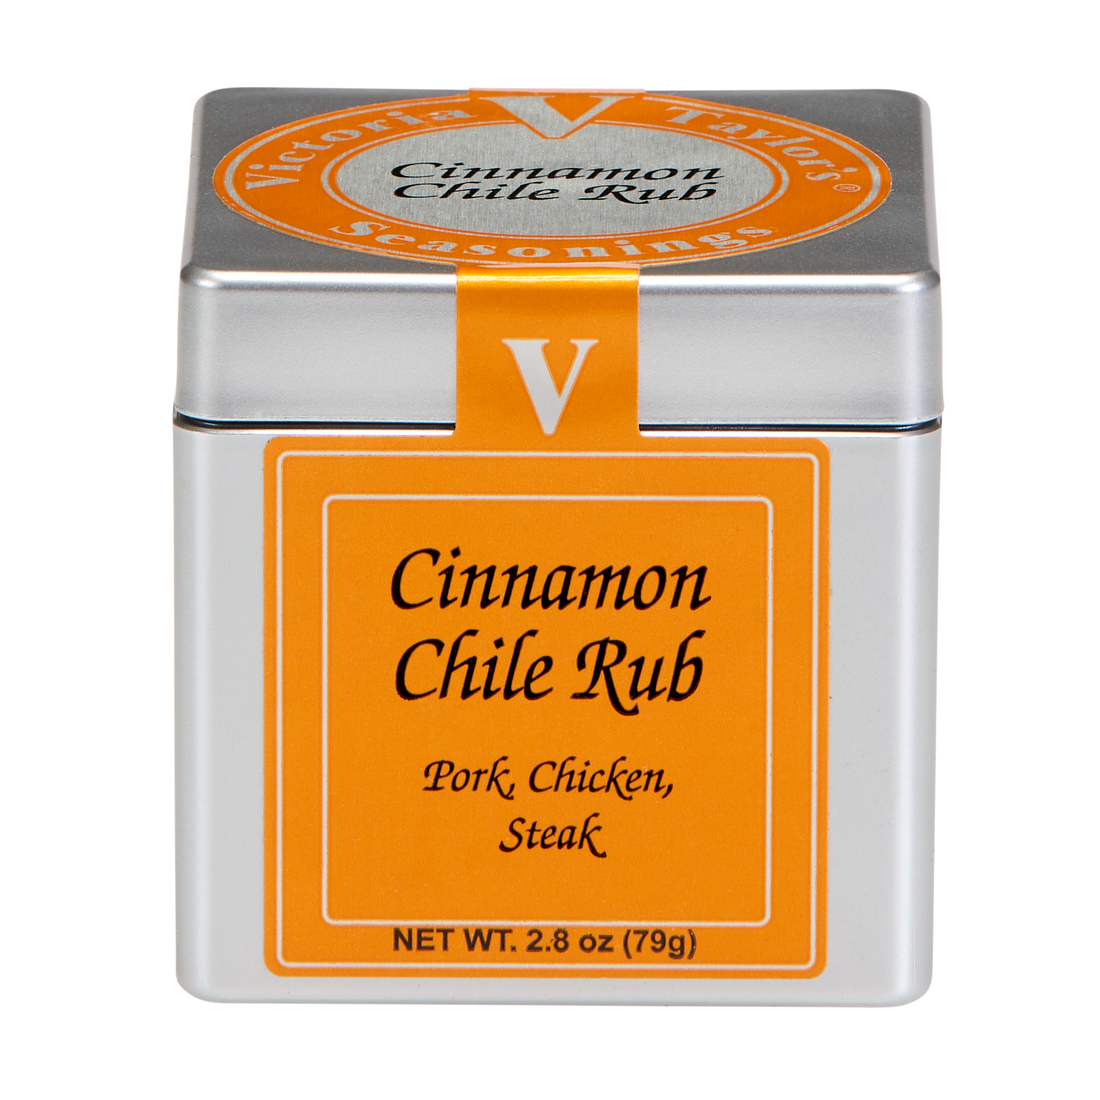 Cinnamon Chile Rub